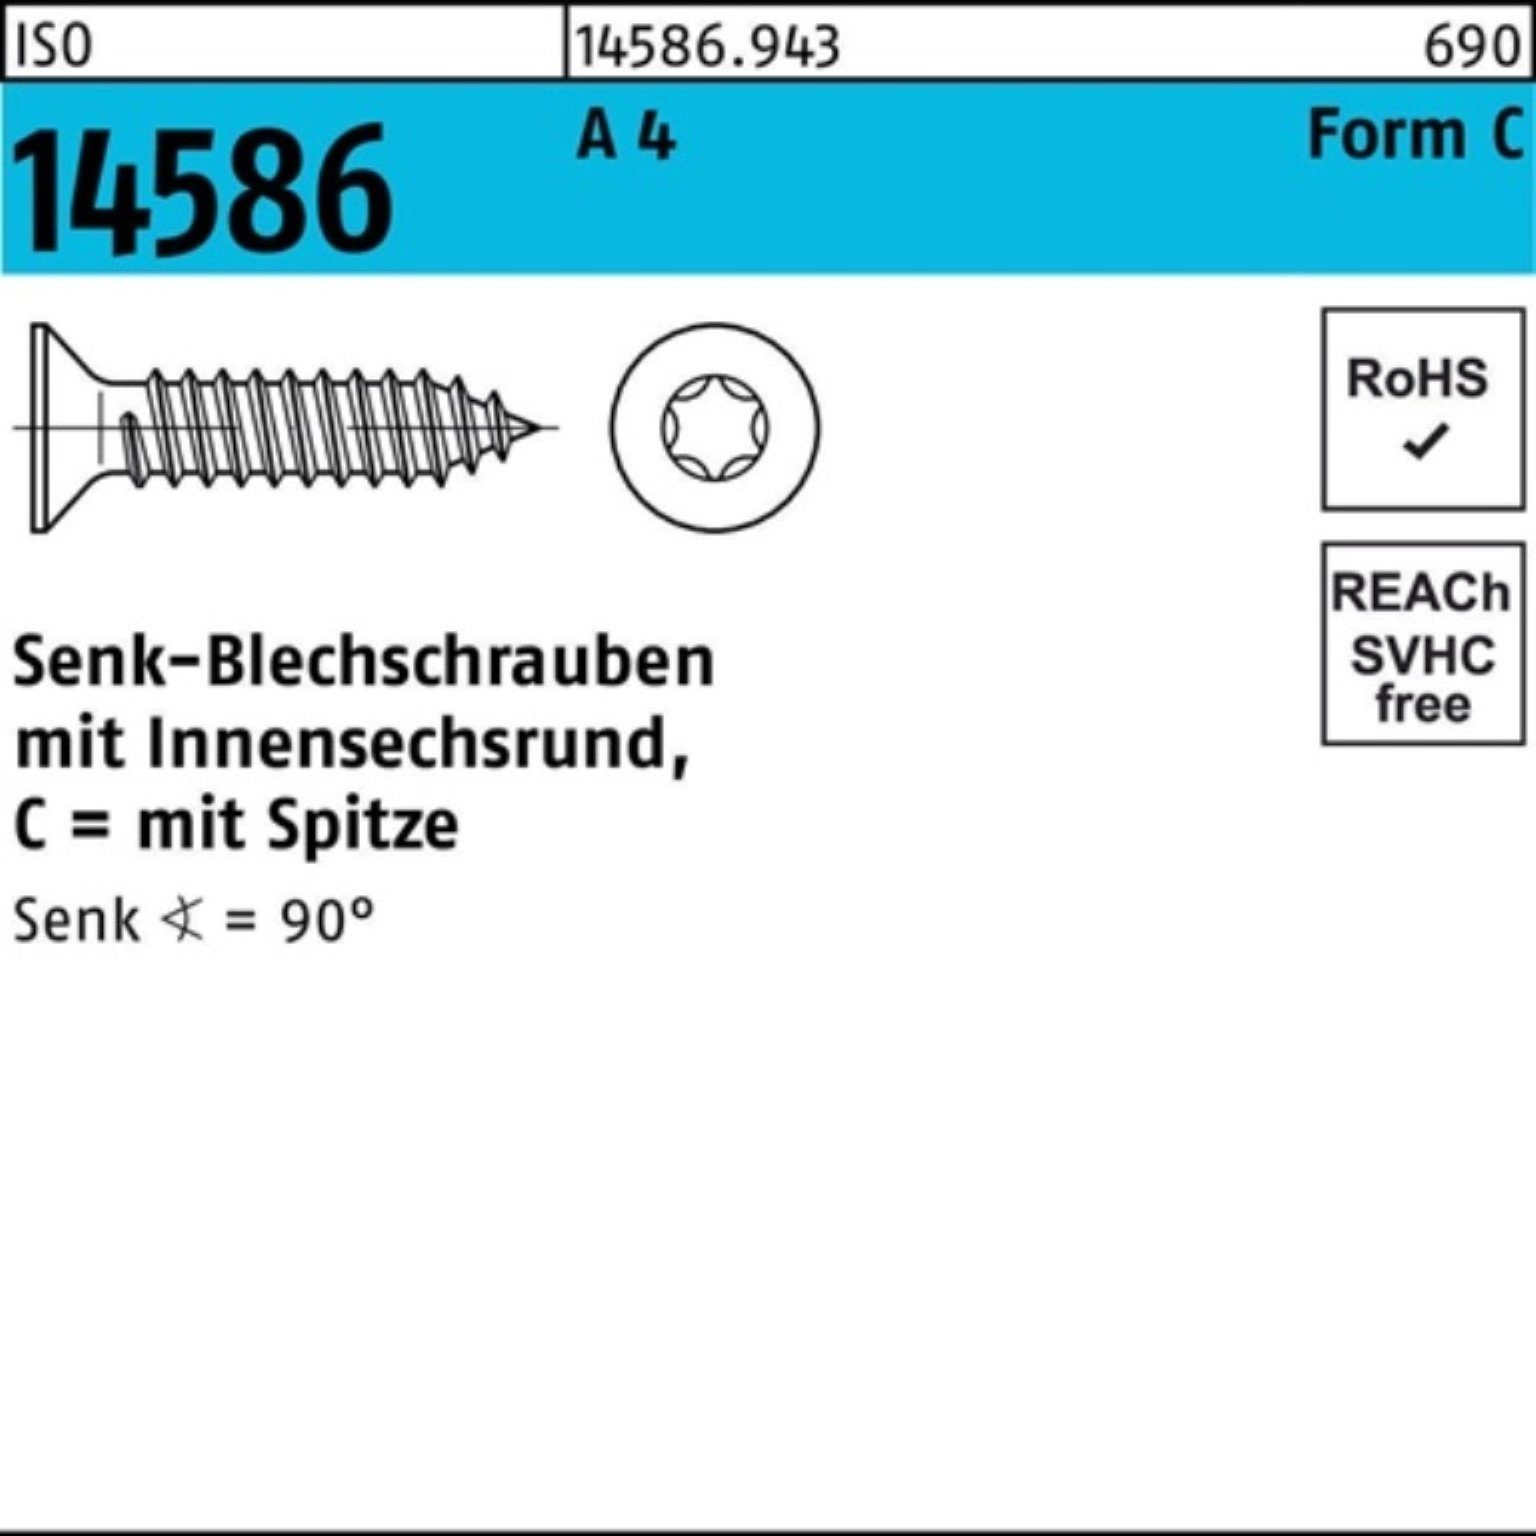 Reyher Schraube 1000er Pack Senkblechschraube ISO 14586 ISR/Spitze 2,9x 16-T10 A 4 100